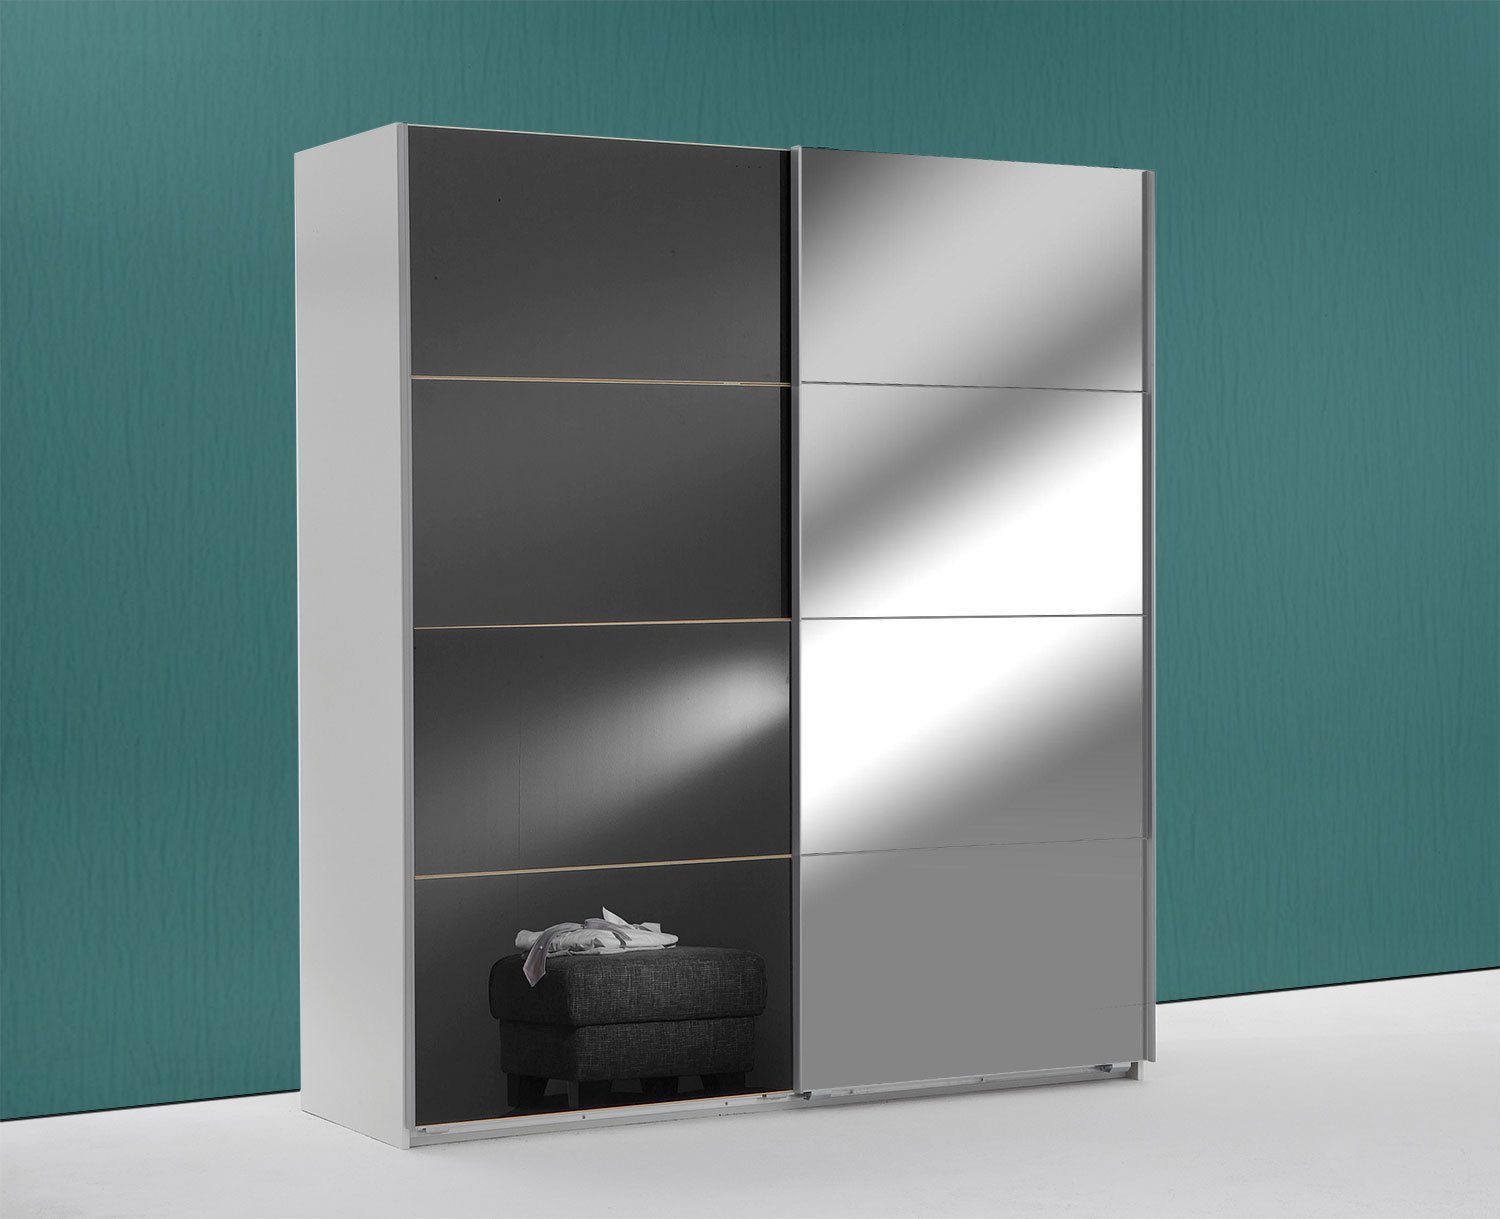 Wimex Schwebetürenschrank Easy Plus (Easy Plus, Schwebetürenschrank) 180x65x210cm weiß grauglas Spiegel